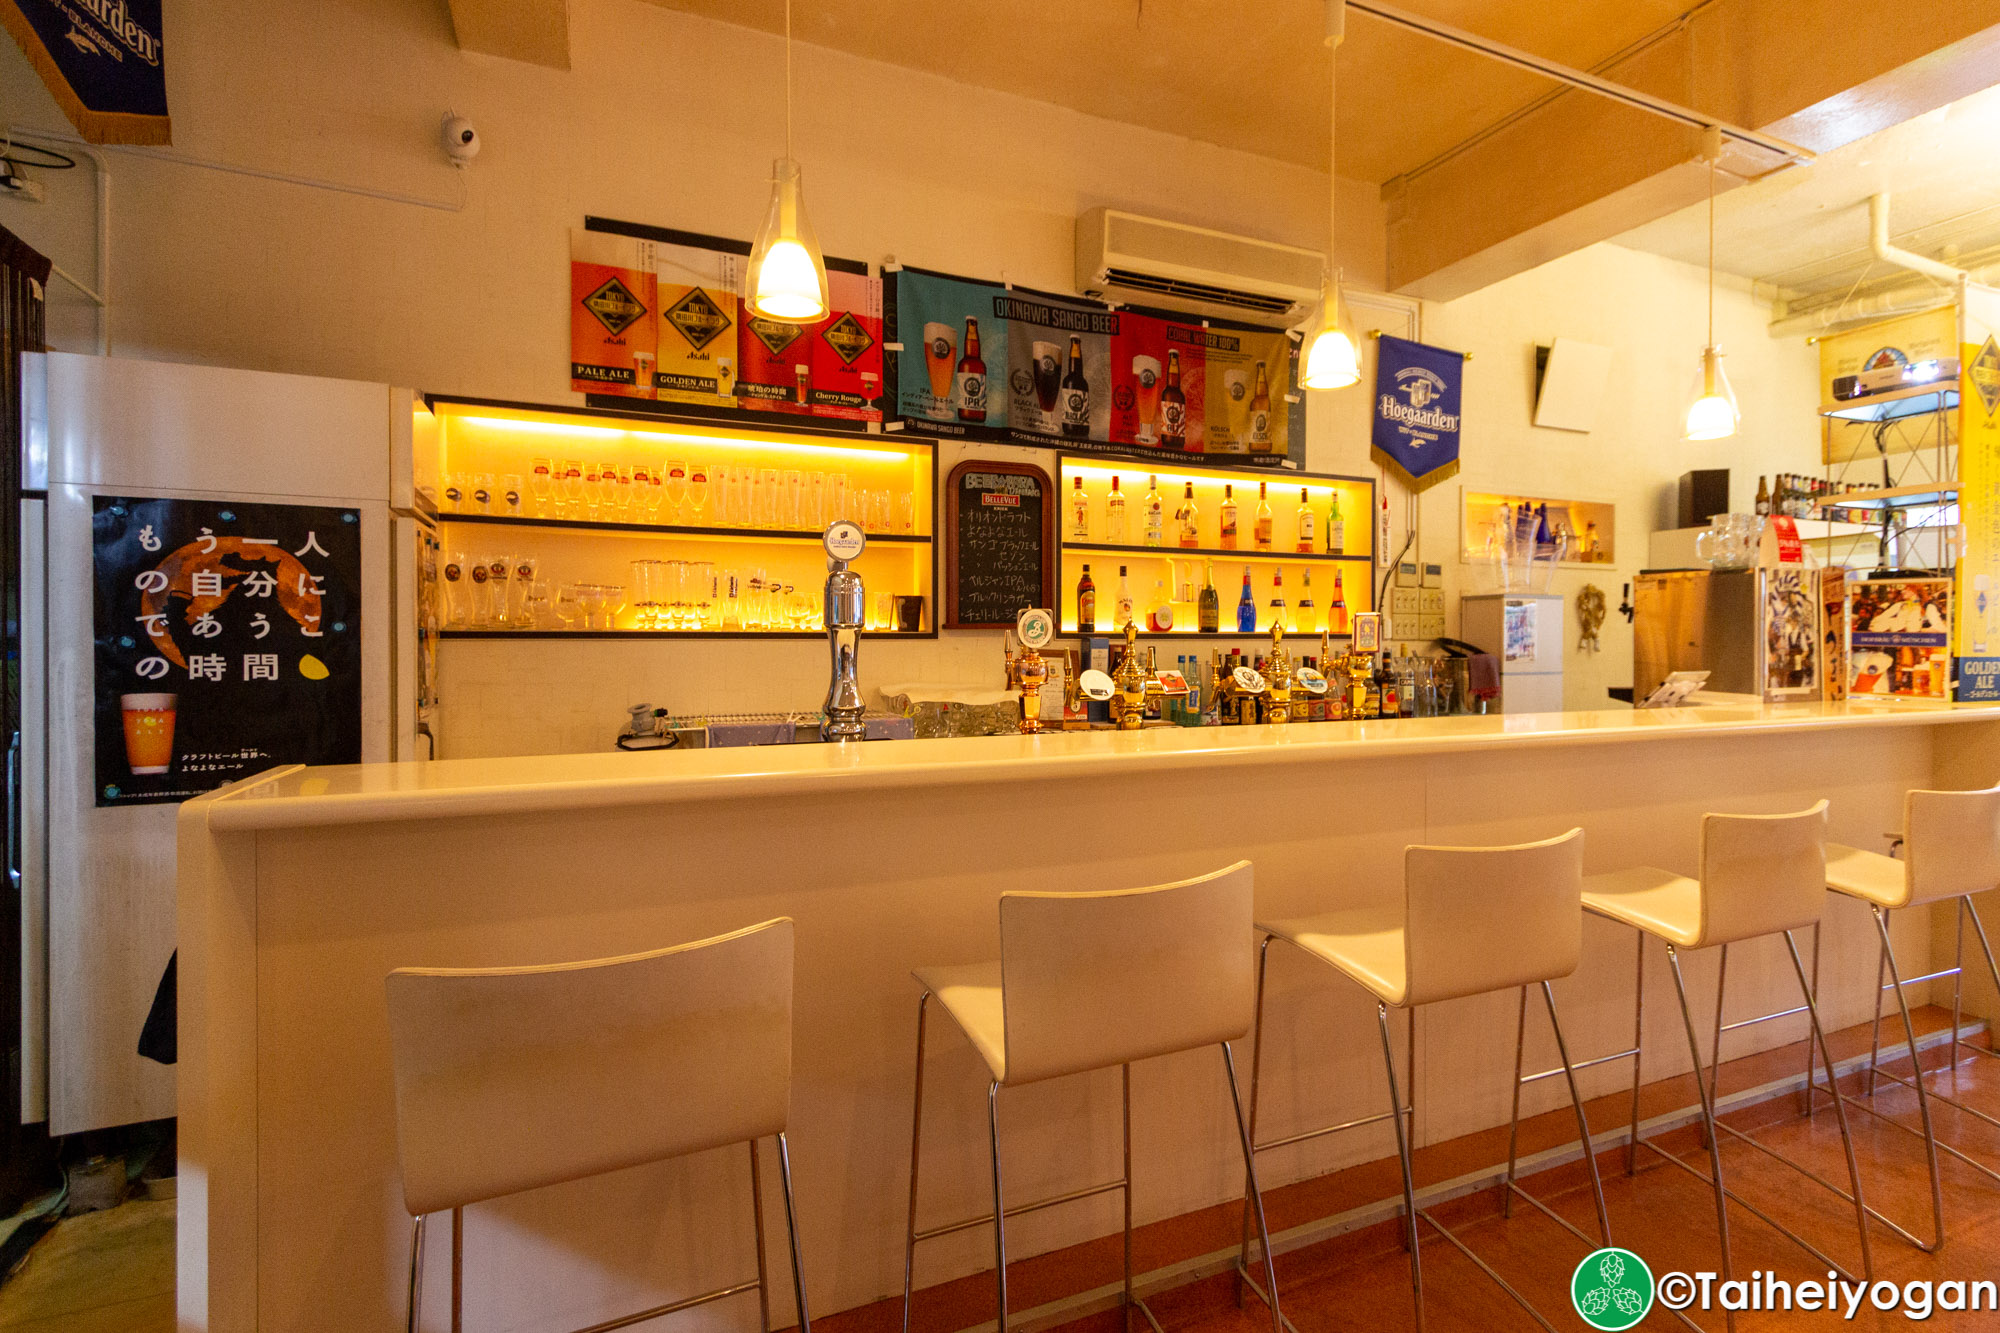 Beerpara Dining - Interior - Bar Counter Seating